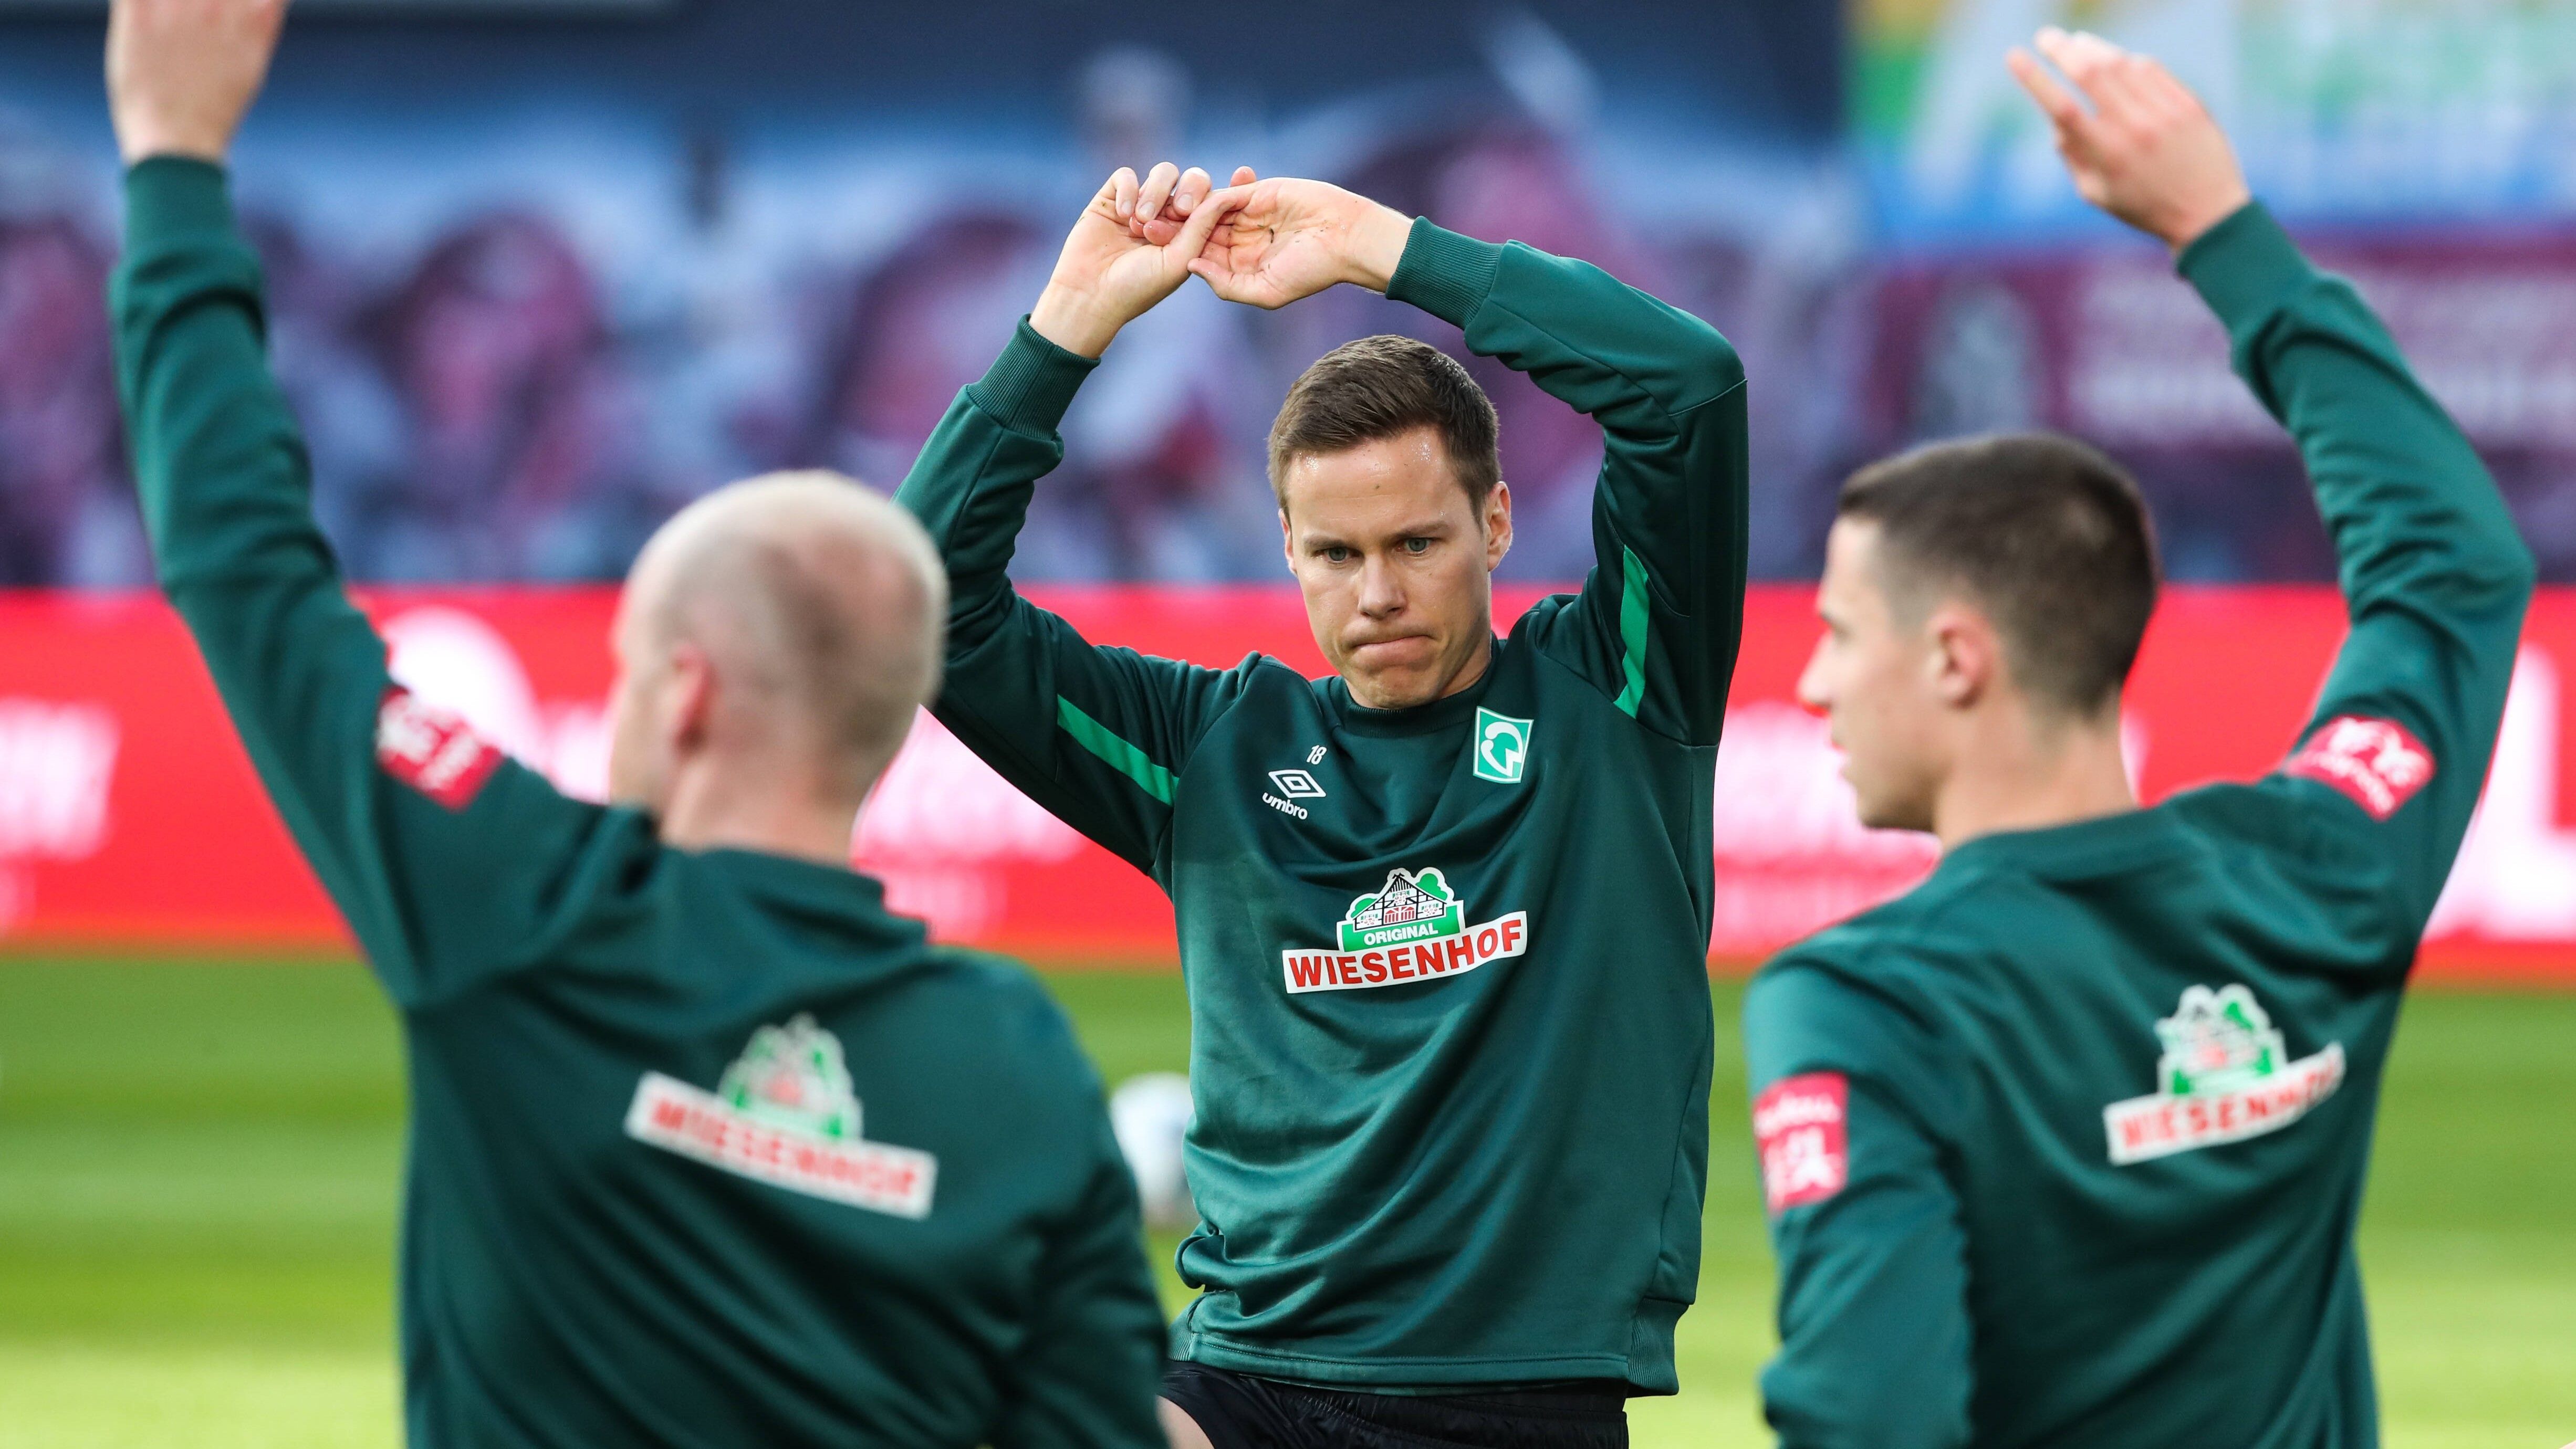 
                <strong>SV Werder Bremen</strong><br>
                1. Niklas Moisander (Kapitän) 2. Davy KlaassenWeitere Mitglieder: Benennung erst nach Ende der Transferperiode am 5. Oktober.
              